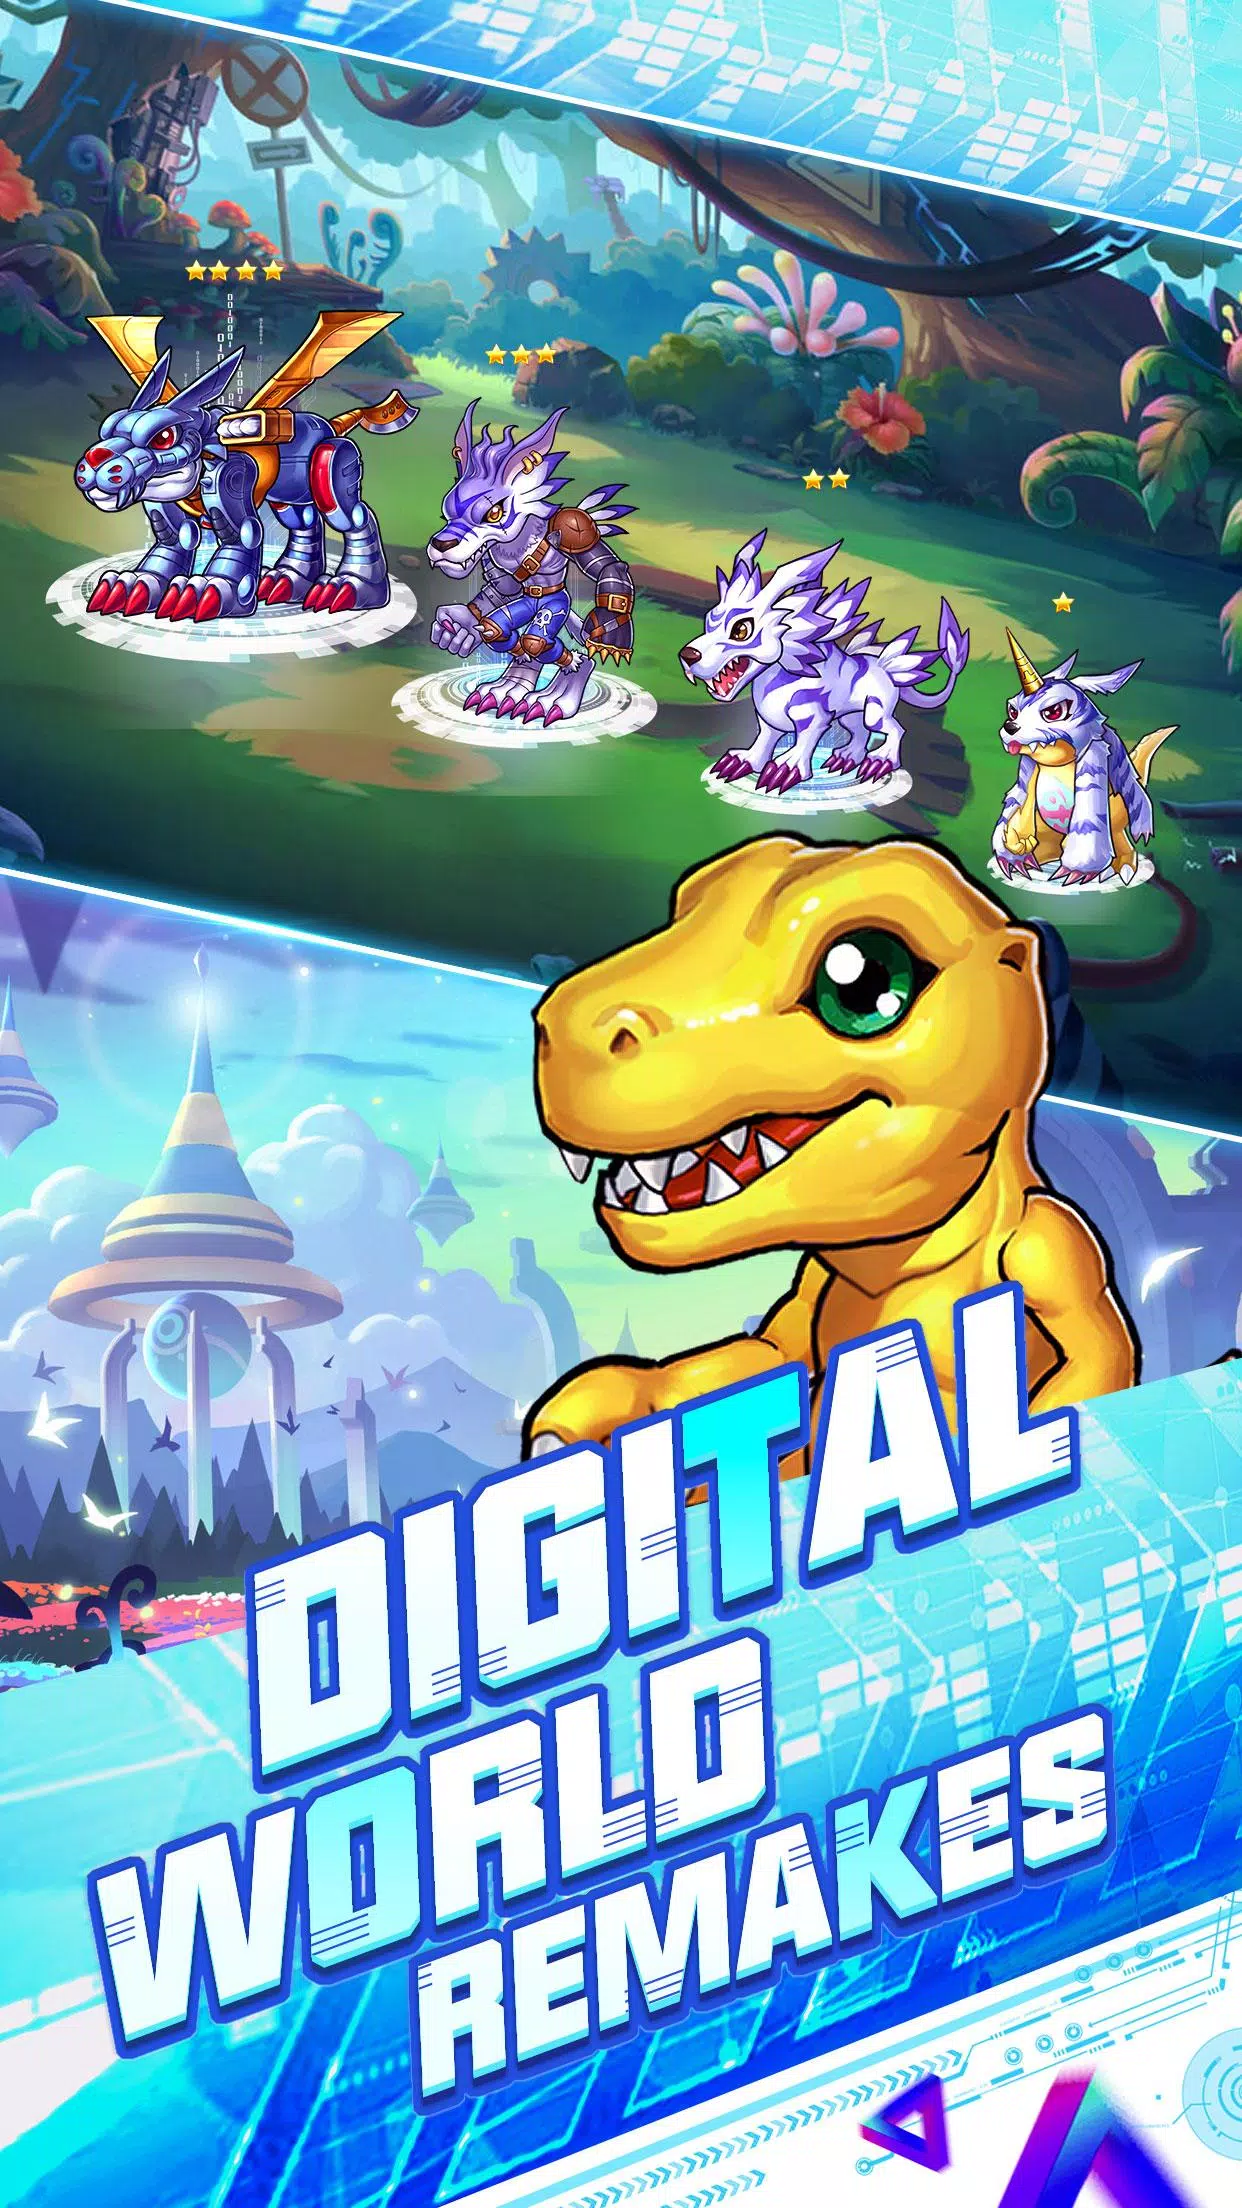 Digimon: confira jogos clássicos da série que mereciam um remake